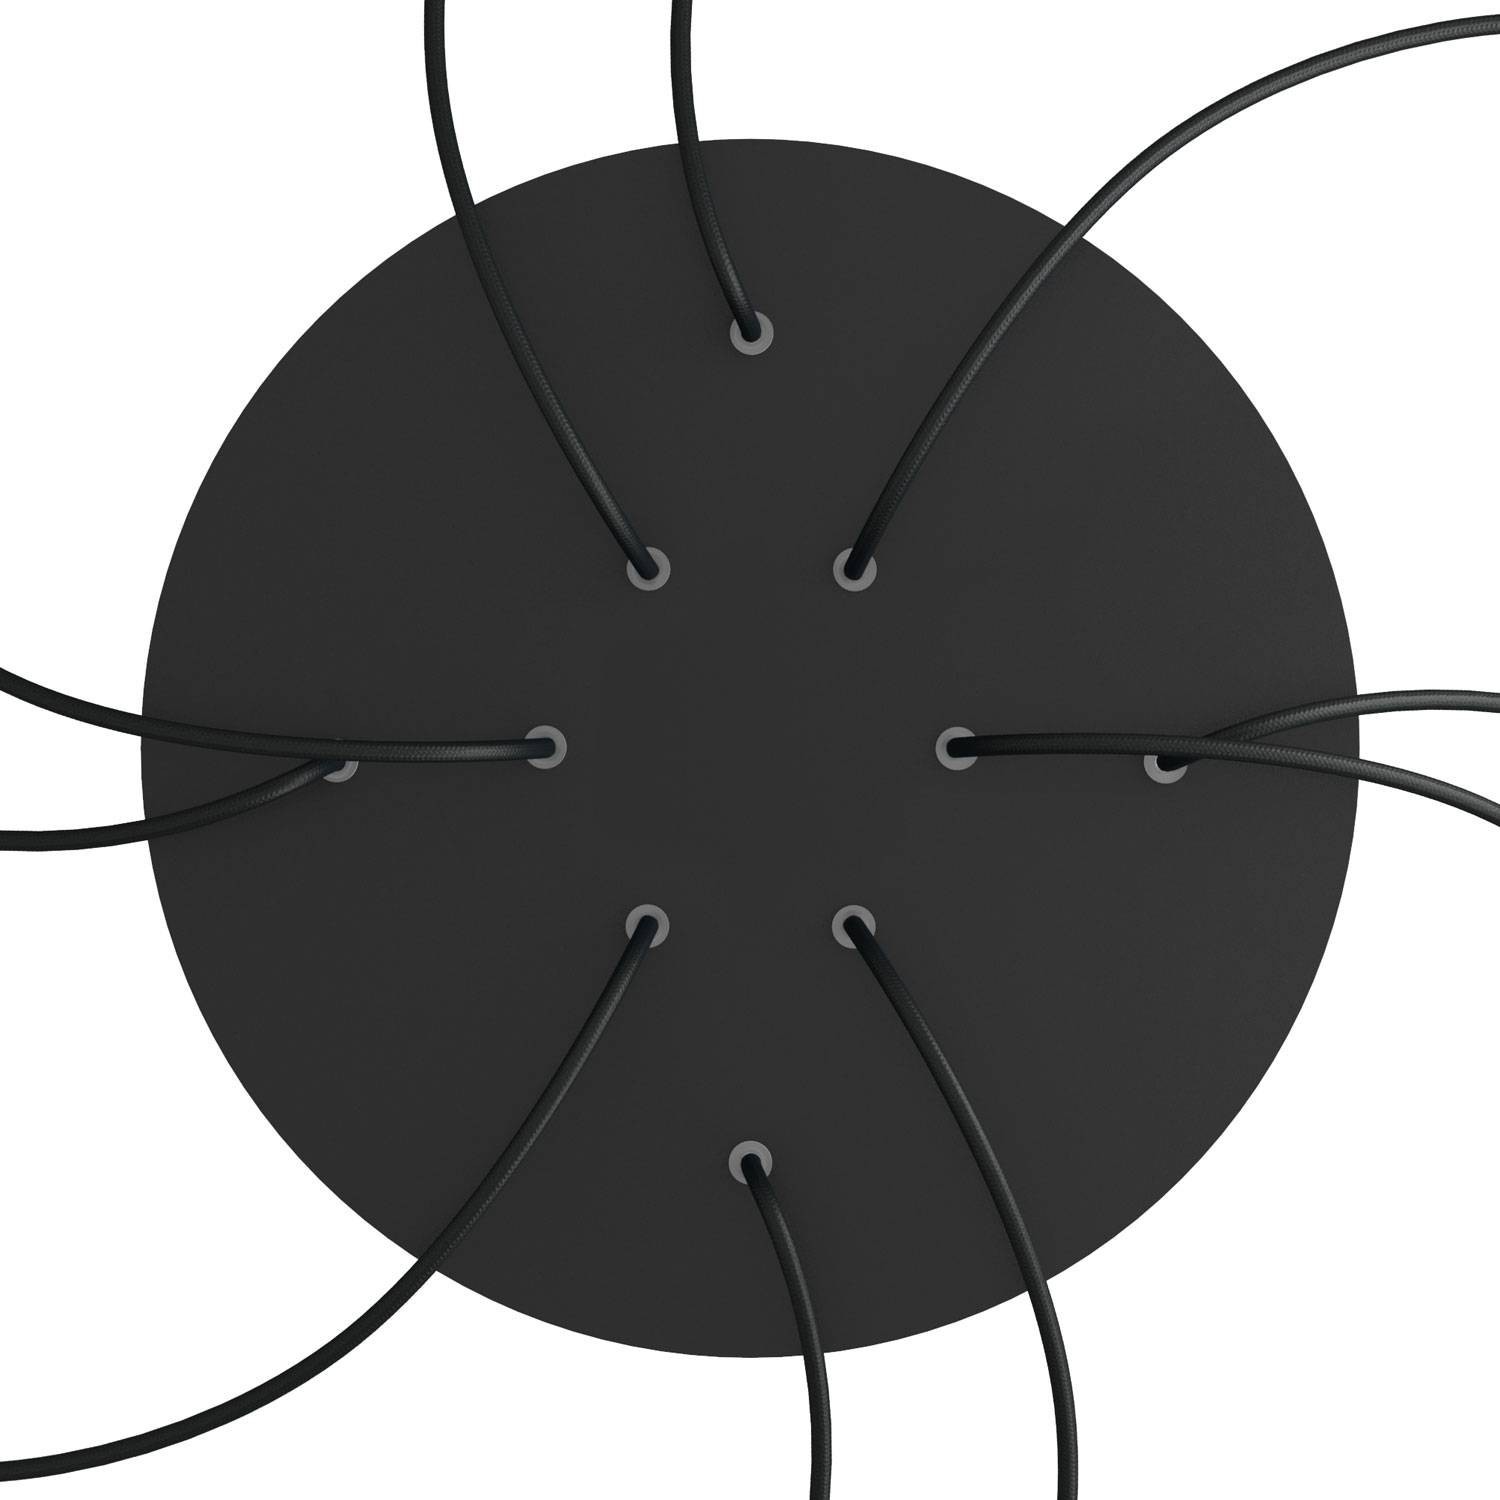 Sistema completo Rose-One redondo de 400 mm de diámetro y 10 agujeros